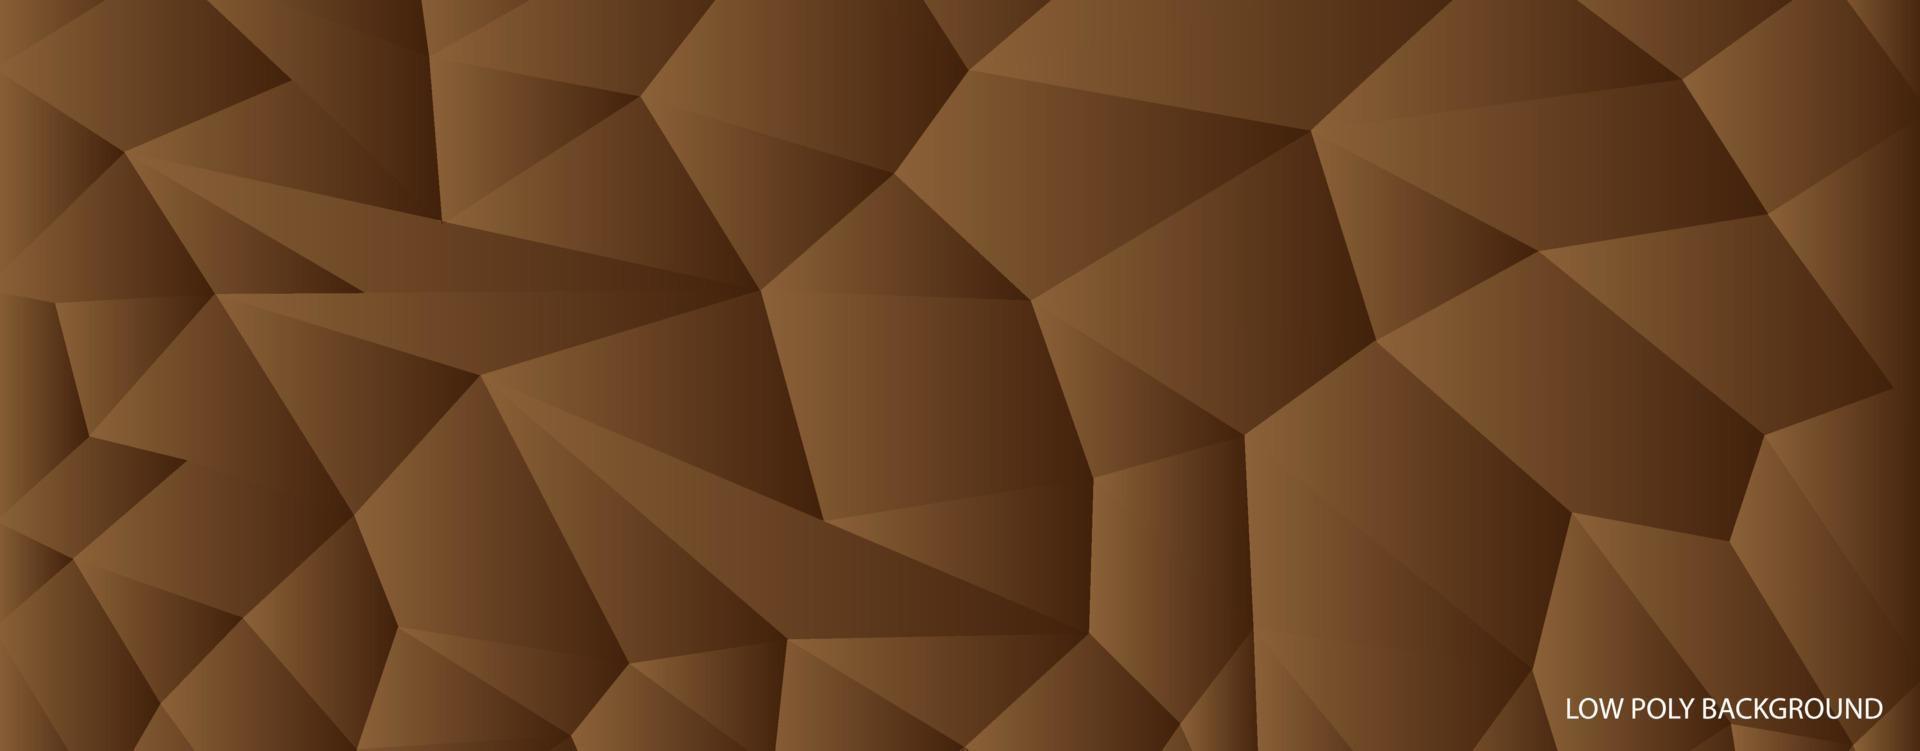 Dreieck brauner Hintergrund Low-Poly-Stil vektor